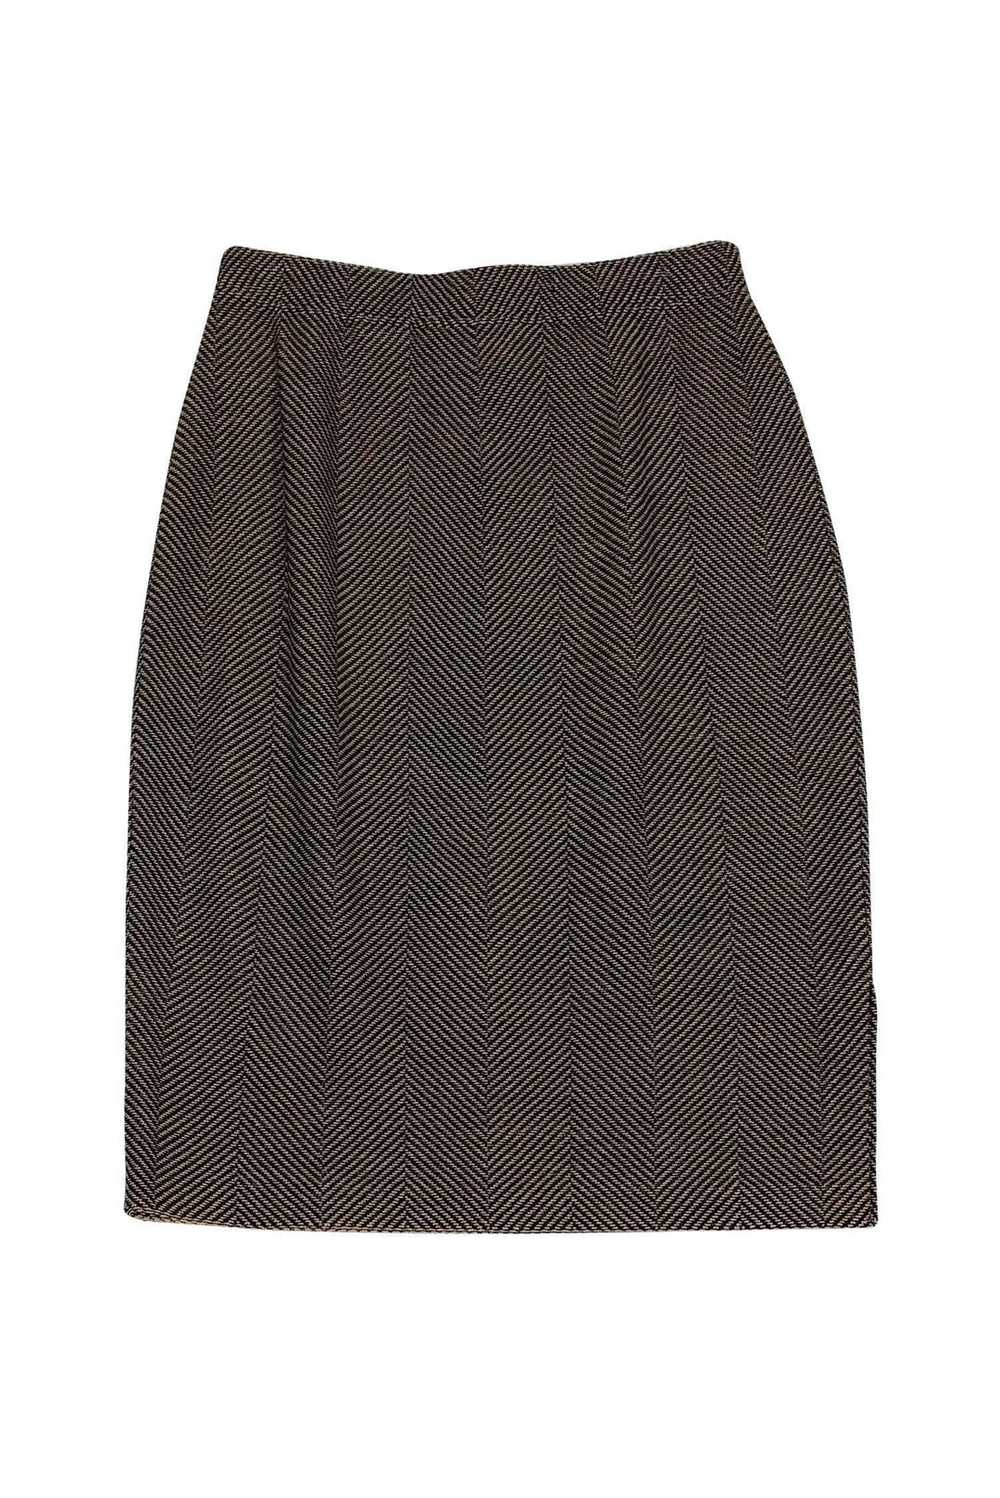 St. John - Tan & Black Chevron Skirt Sz 6 - image 2